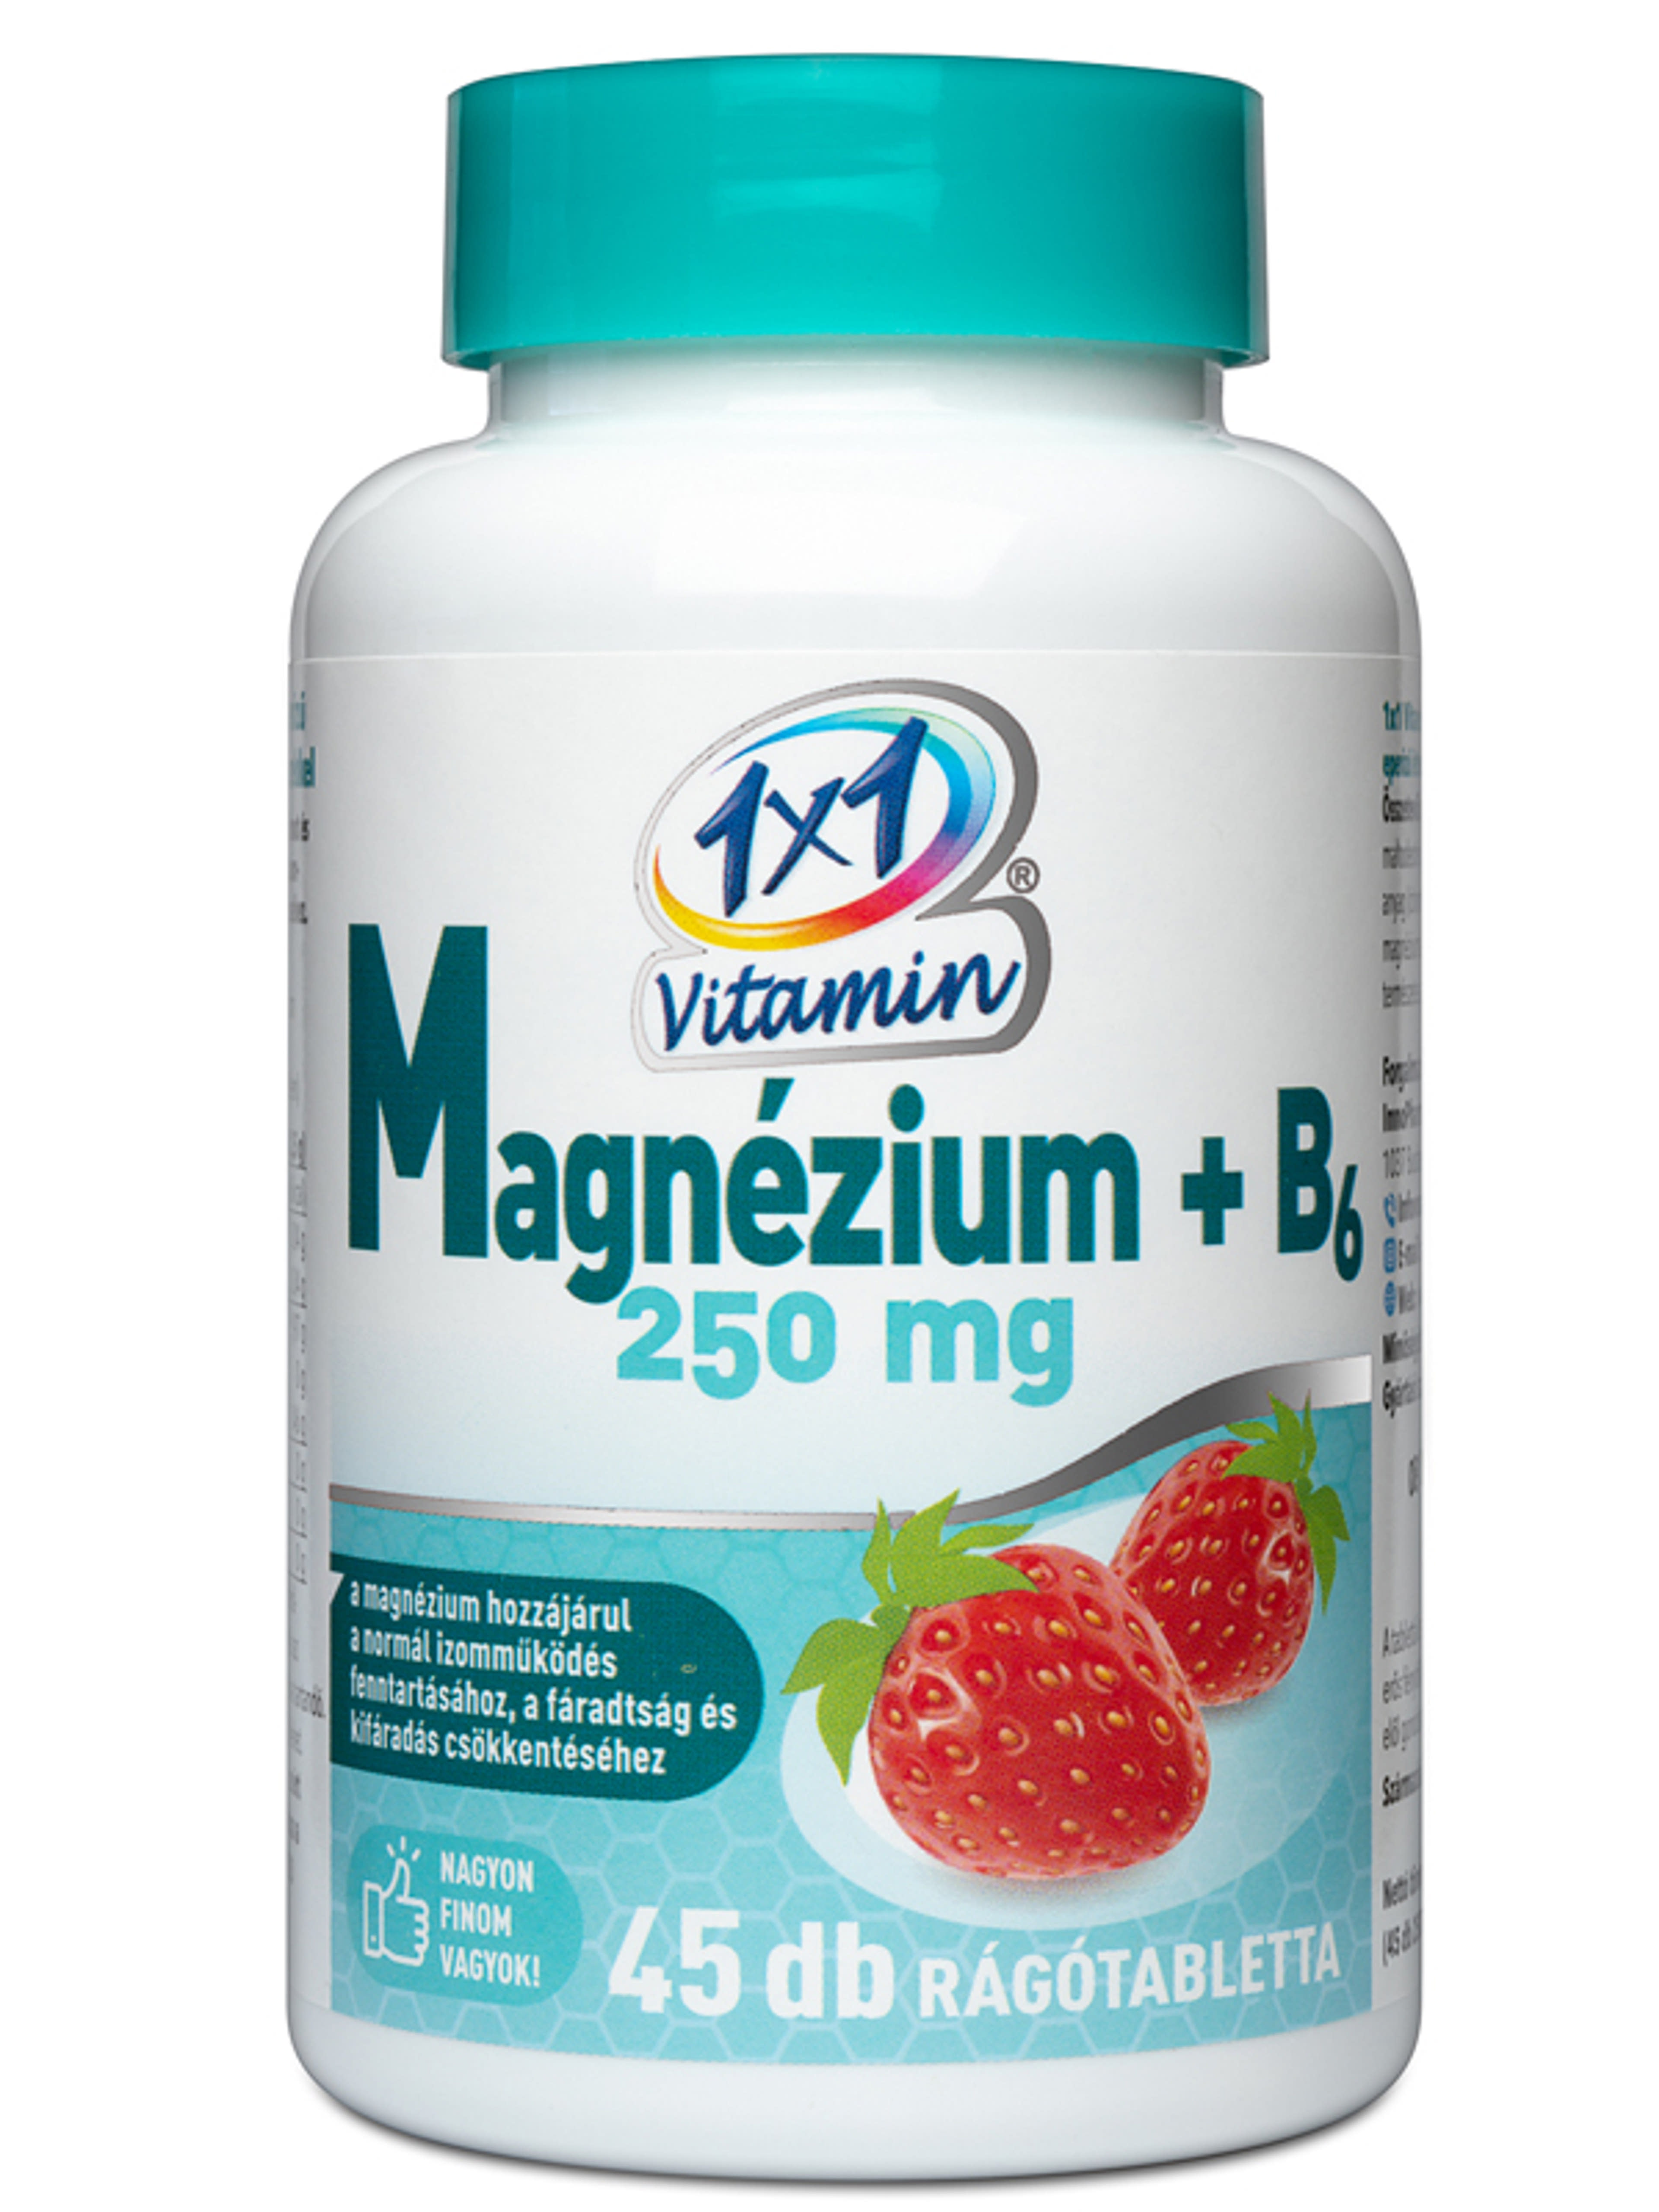 1x1 Vitamin Magnézium +B6 250mg rágótabletta epres - 45 db